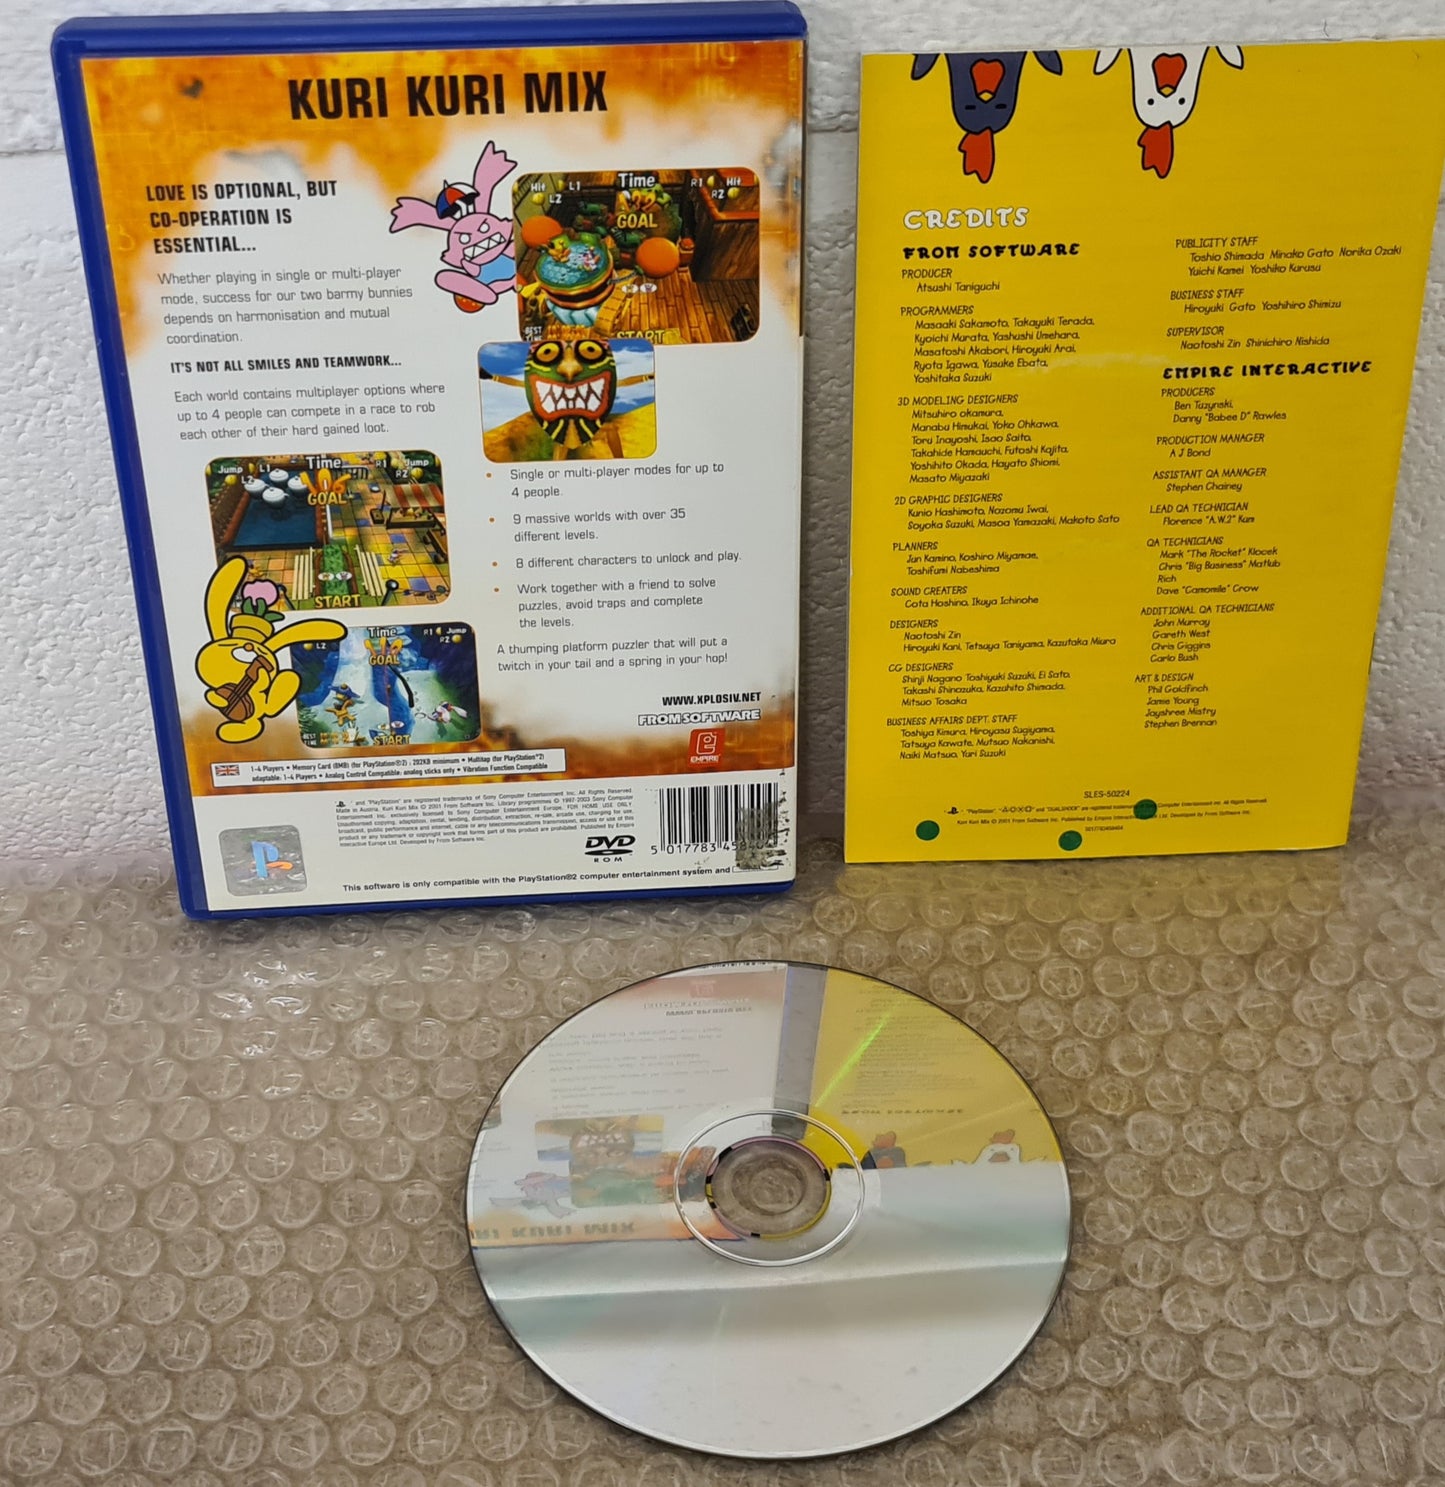 Kuri Kuri Mix Sony Playstation 2 (PS2) Game